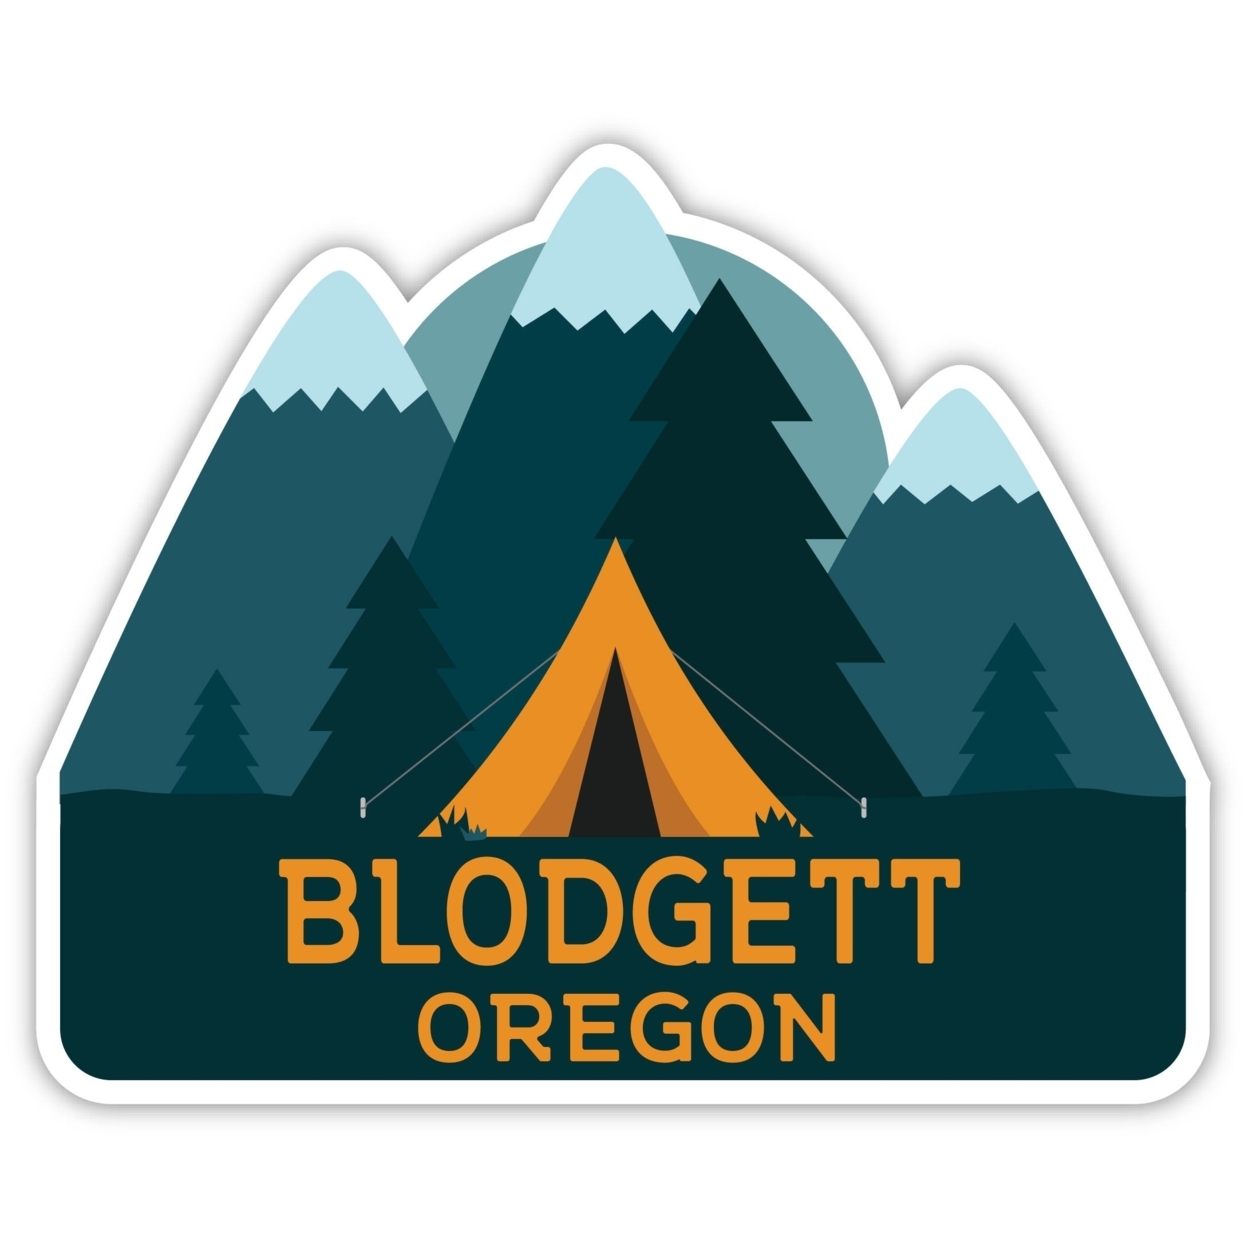 Blodgett Oregon Souvenir Decorative Stickers (Choose Theme And Size) - Single Unit, 10-Inch, Tent